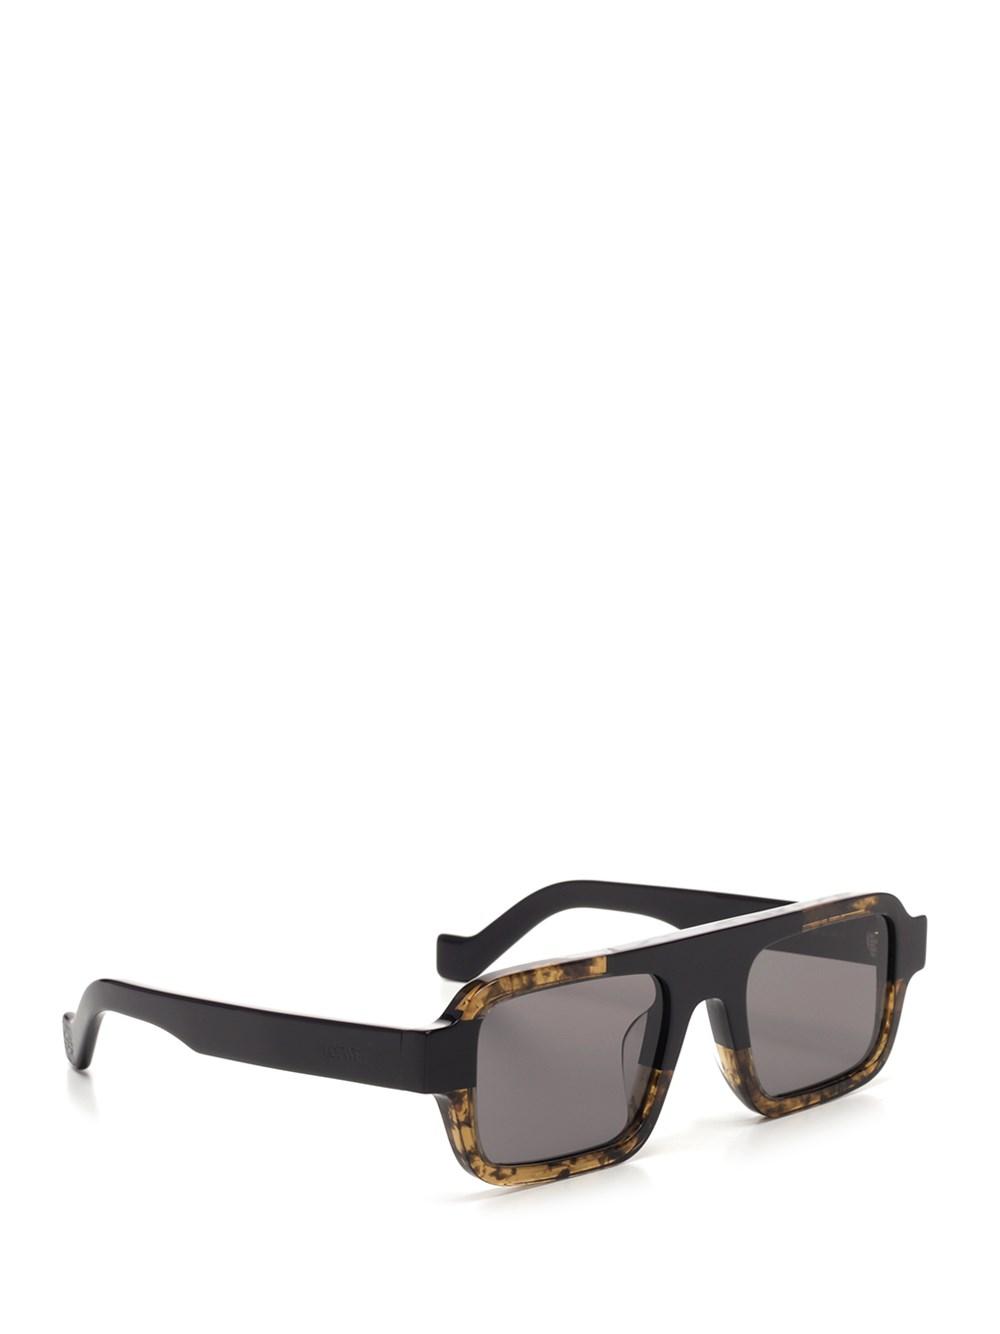 Loewe Square Sunglasses in Brown for Men - Lyst